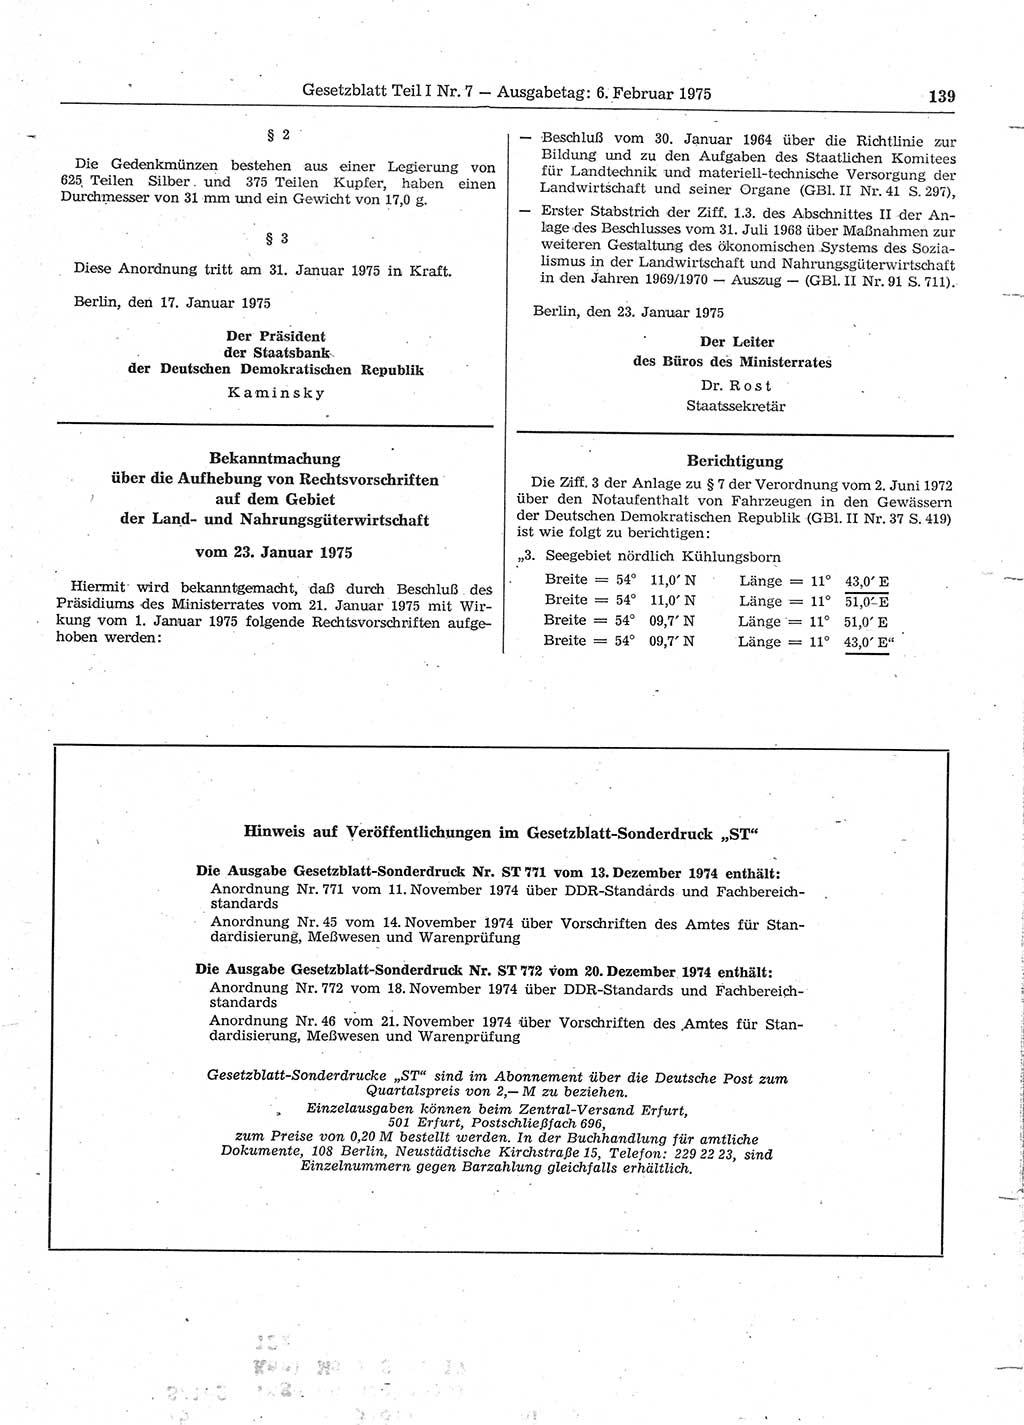 Gesetzblatt (GBl.) der Deutschen Demokratischen Republik (DDR) Teil Ⅰ 1975, Seite 139 (GBl. DDR Ⅰ 1975, S. 139)